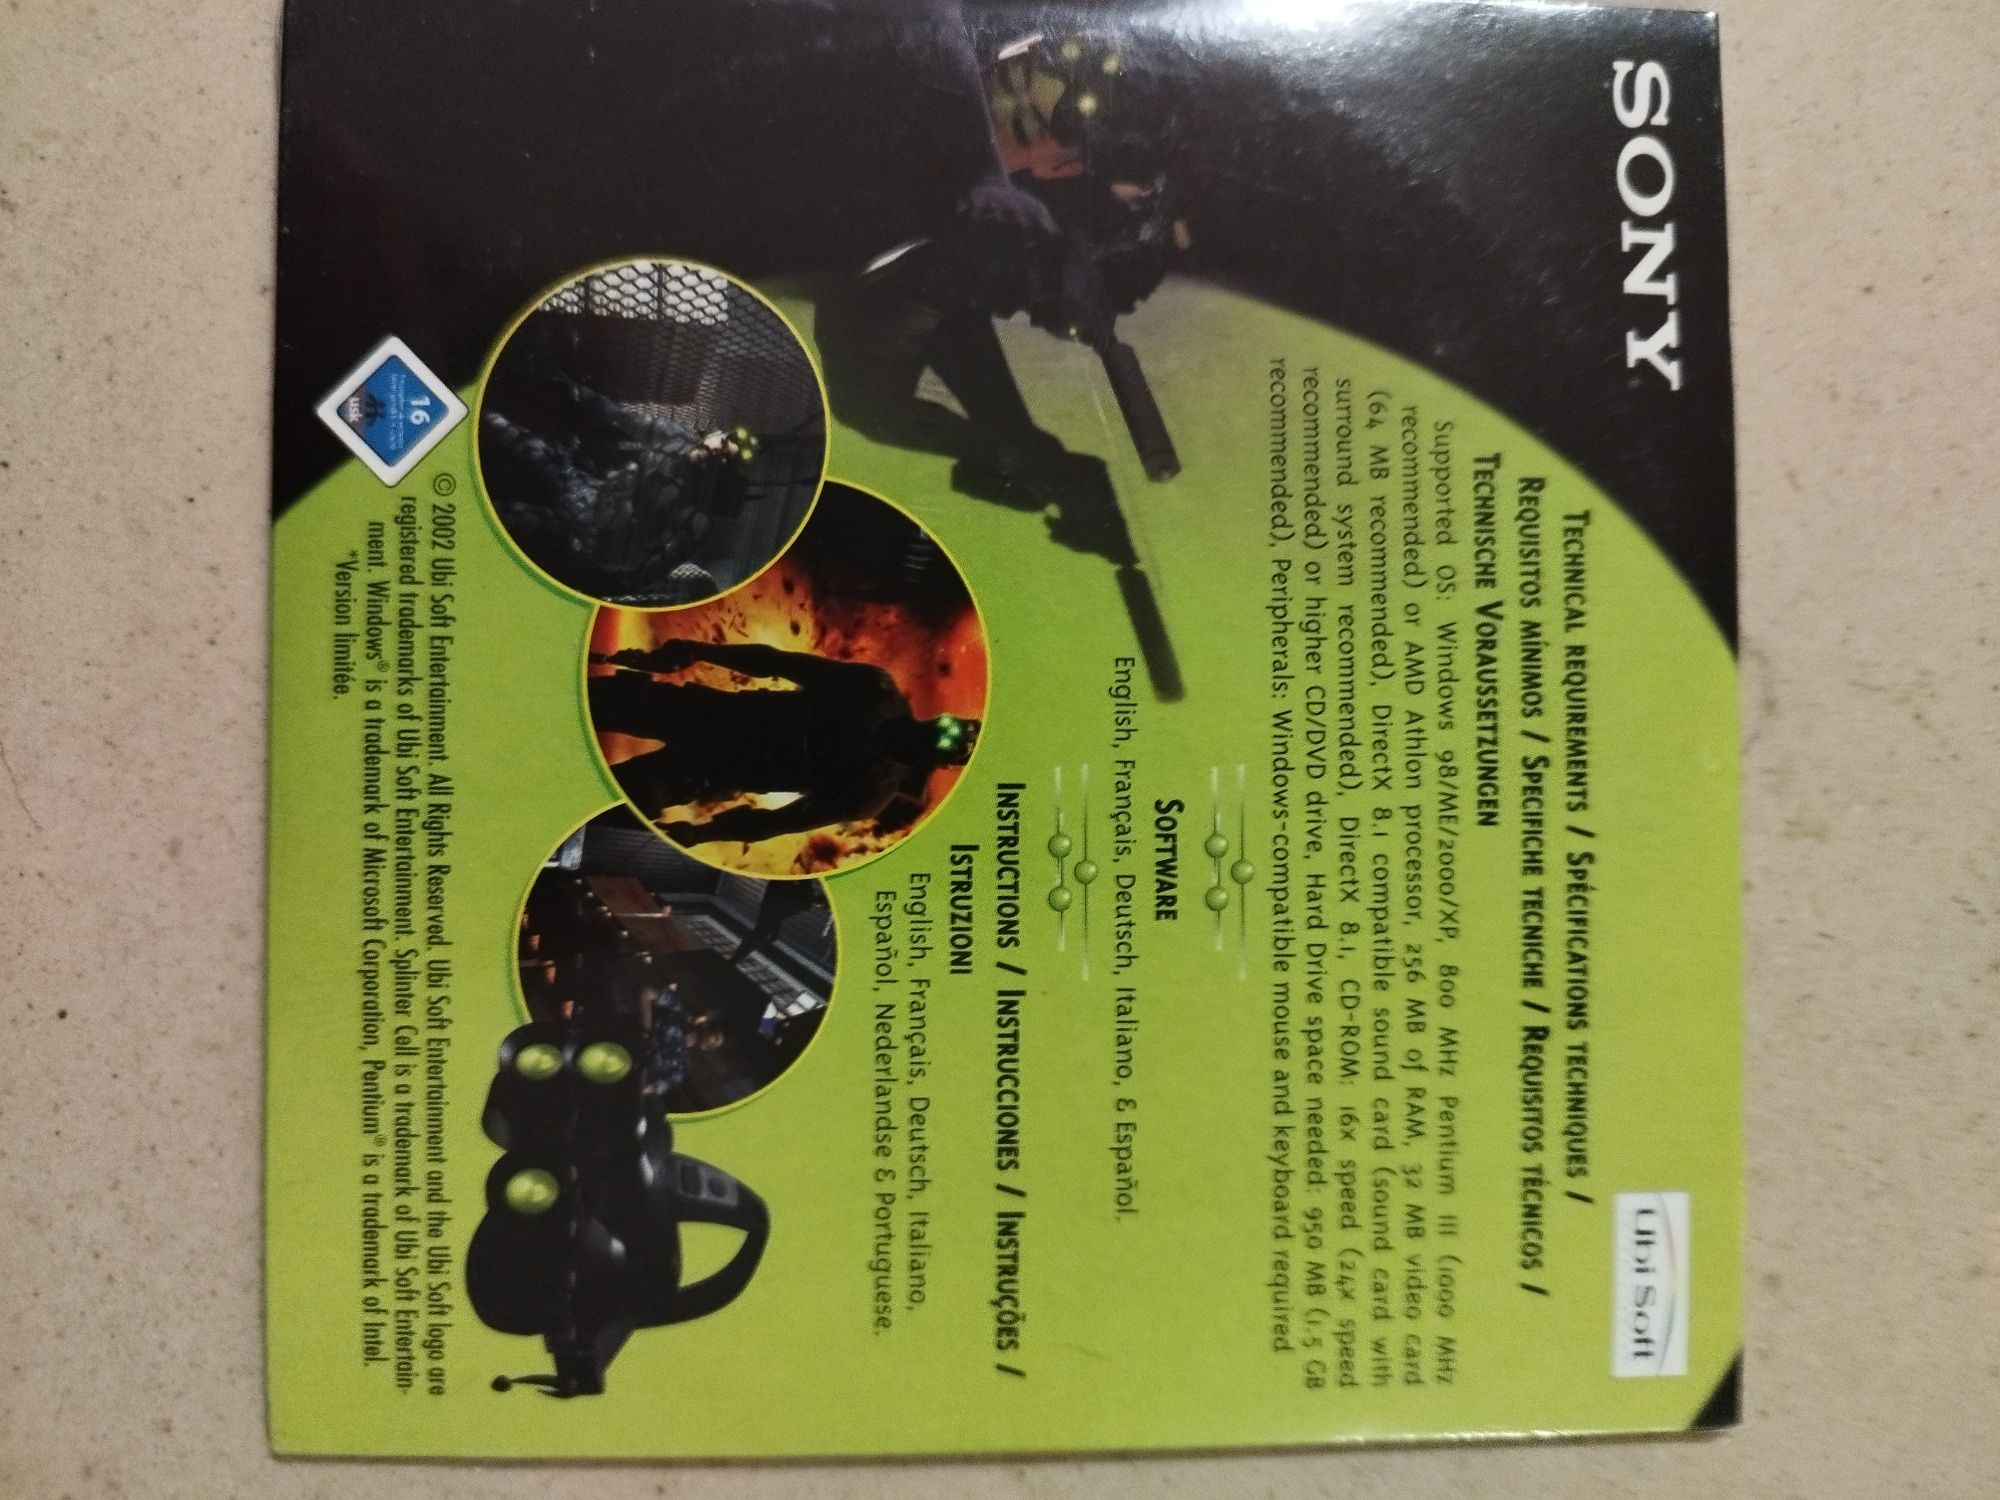 CD jogo Splinter Cell limited edition Sony